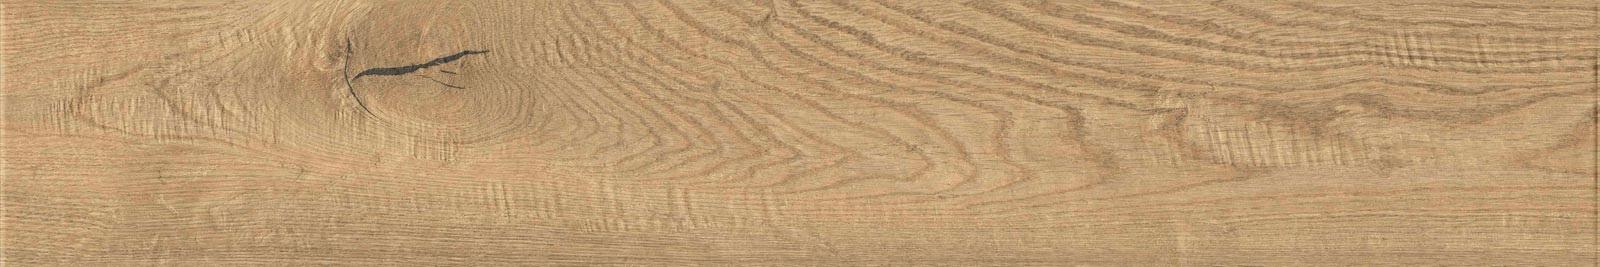 Vero pavimento Marazzi effetto legno Naturale